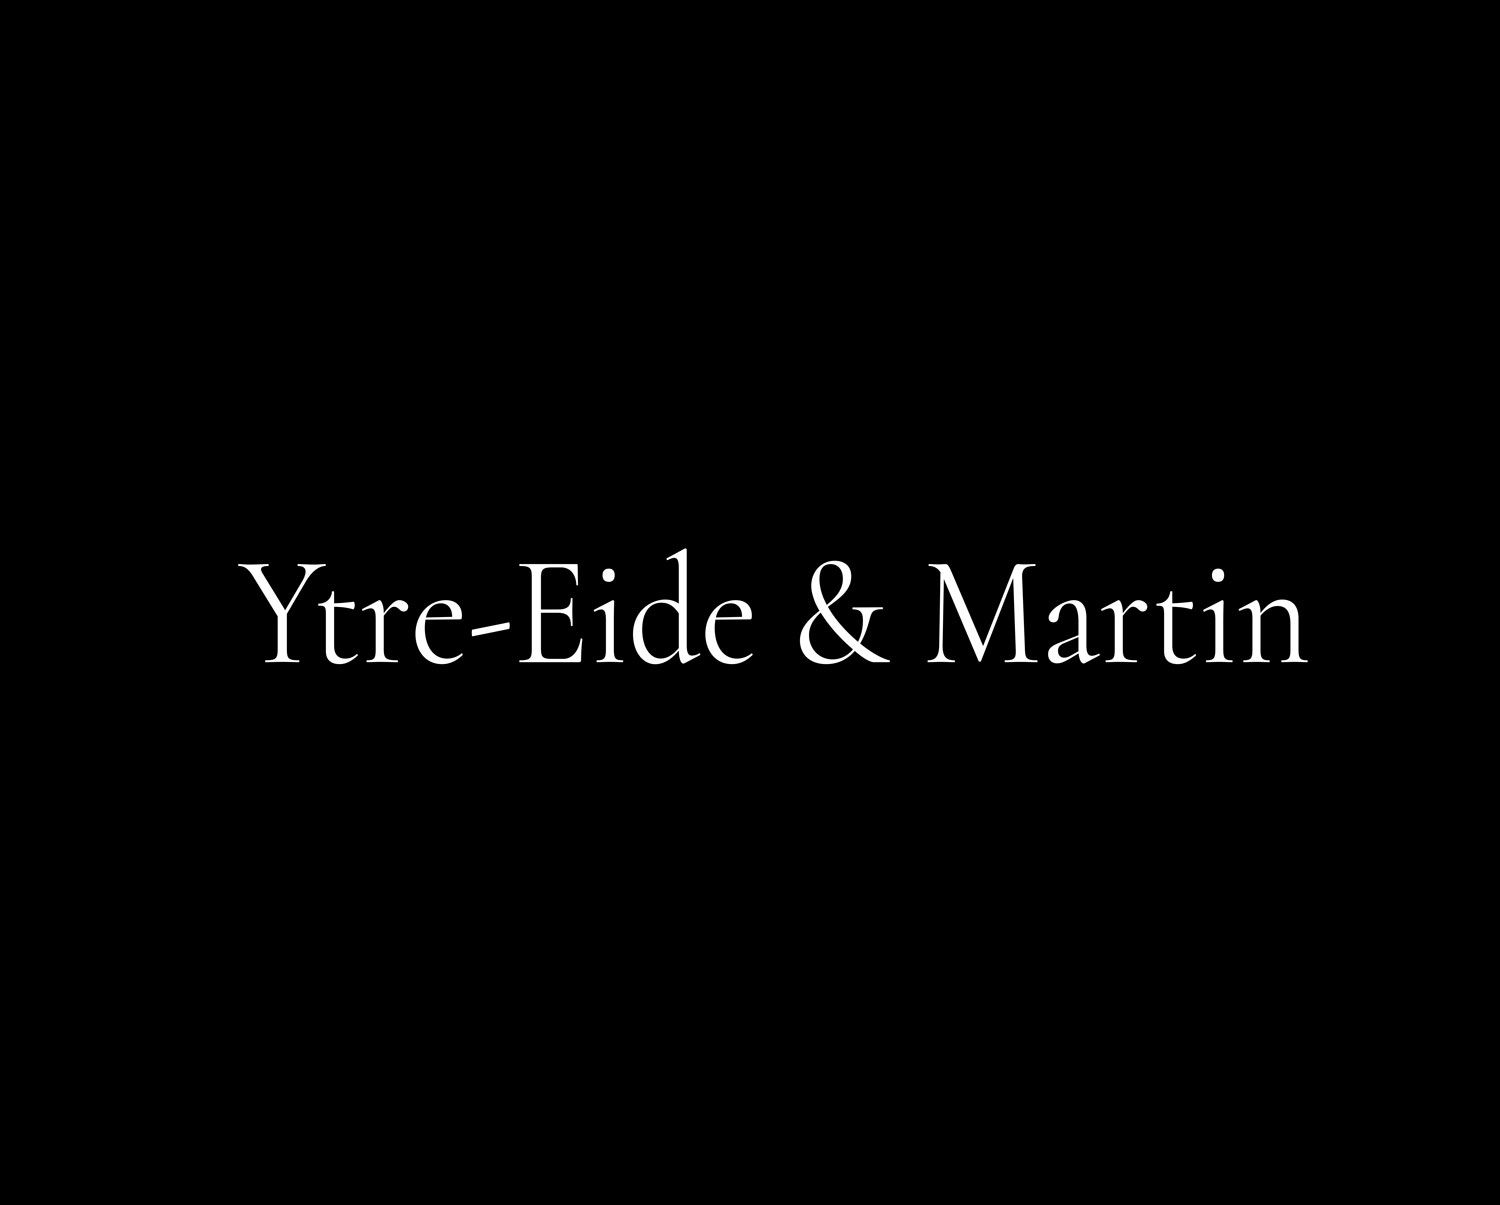 Ytre-Eide & Martin